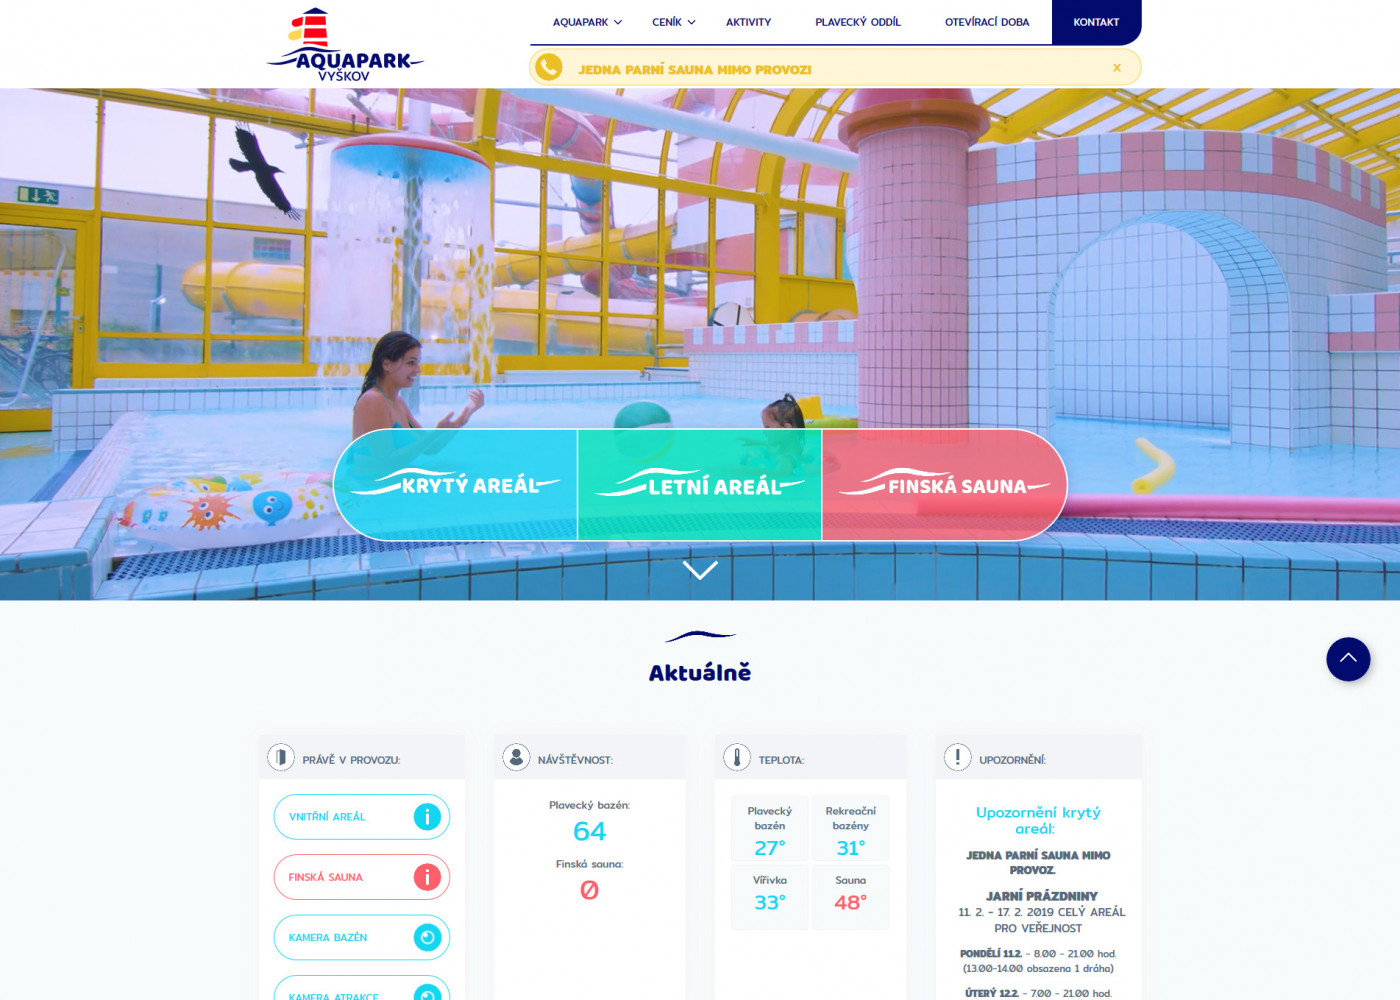 Tvorba nového webu Aquapark Vyškov - Porovnání, nová verze  #1